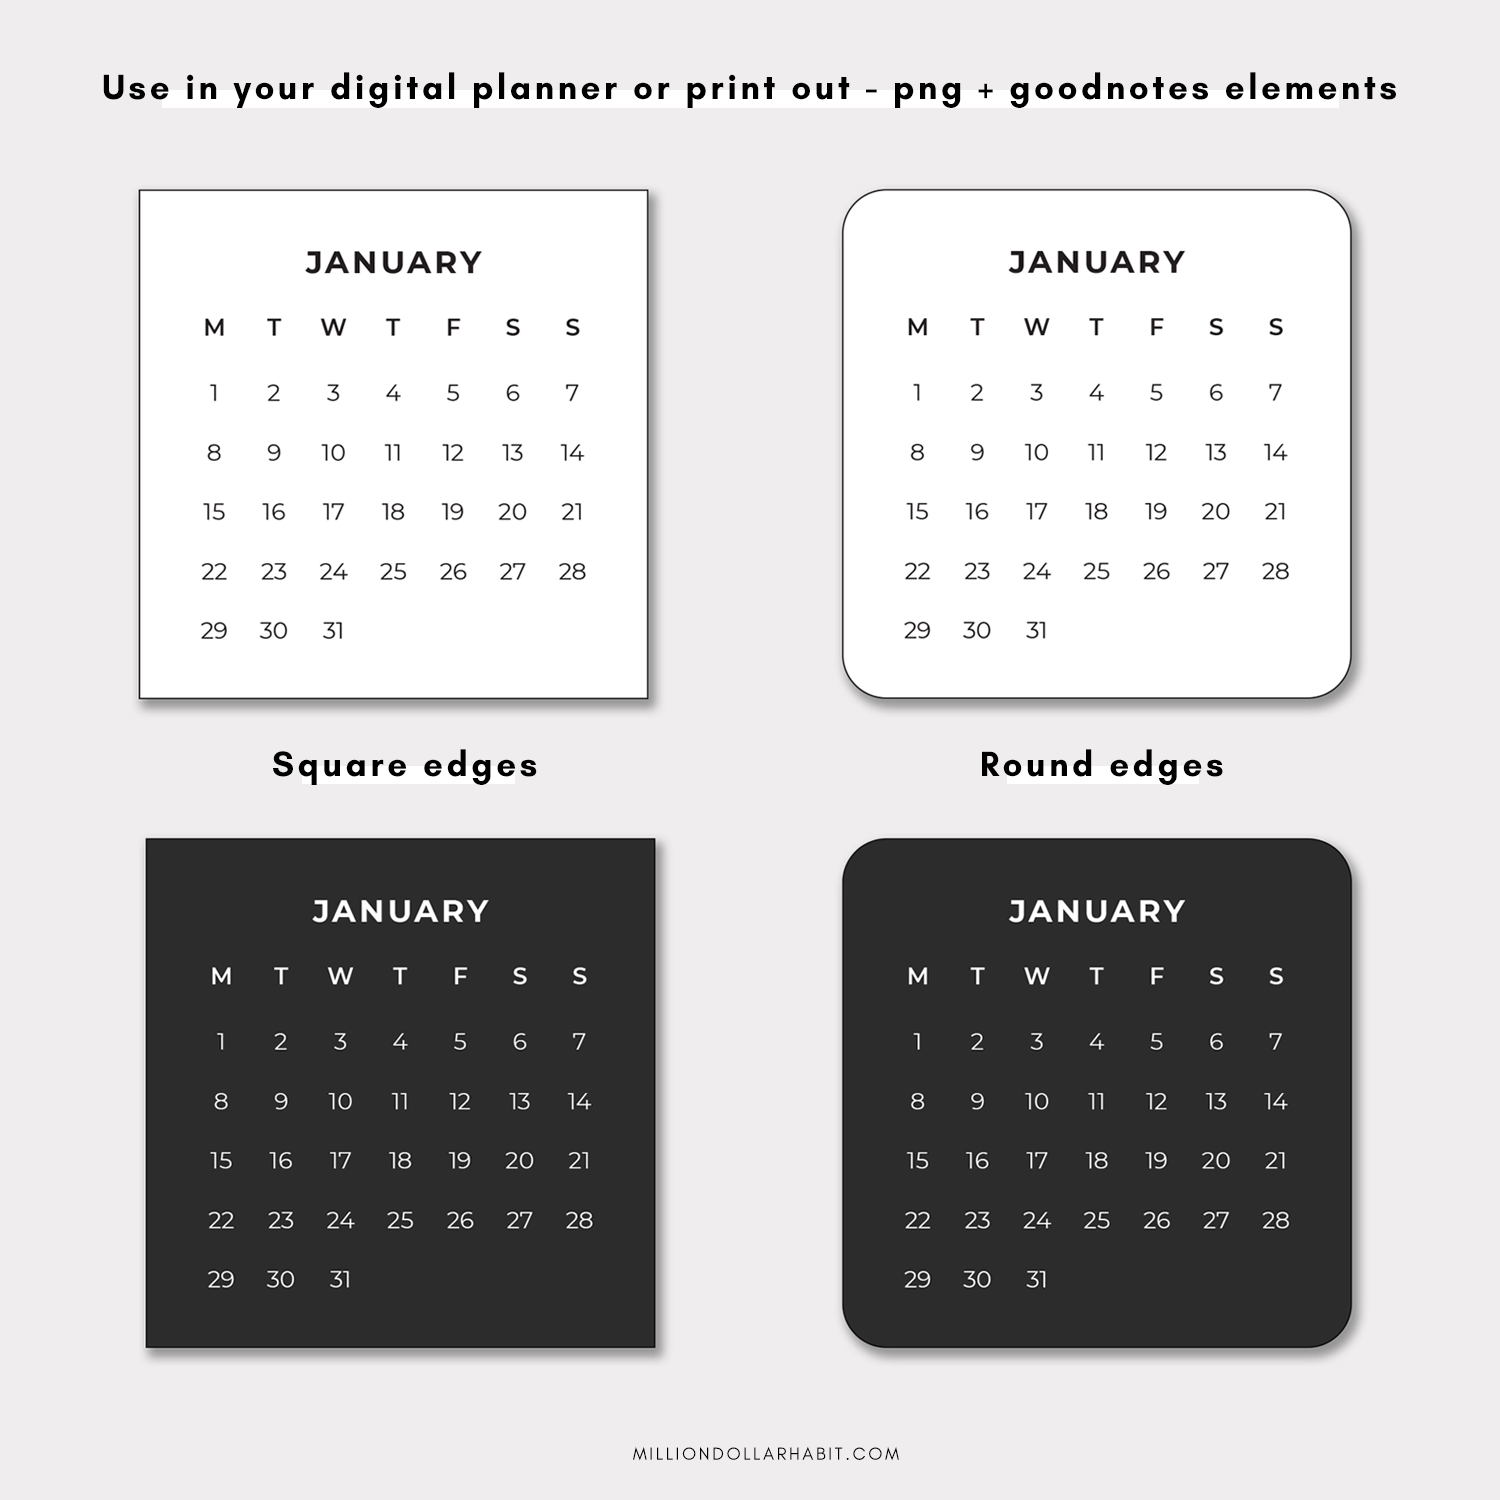 2024 Mini Calendar Stickers - Million Dollar Habit - Digital Stickers